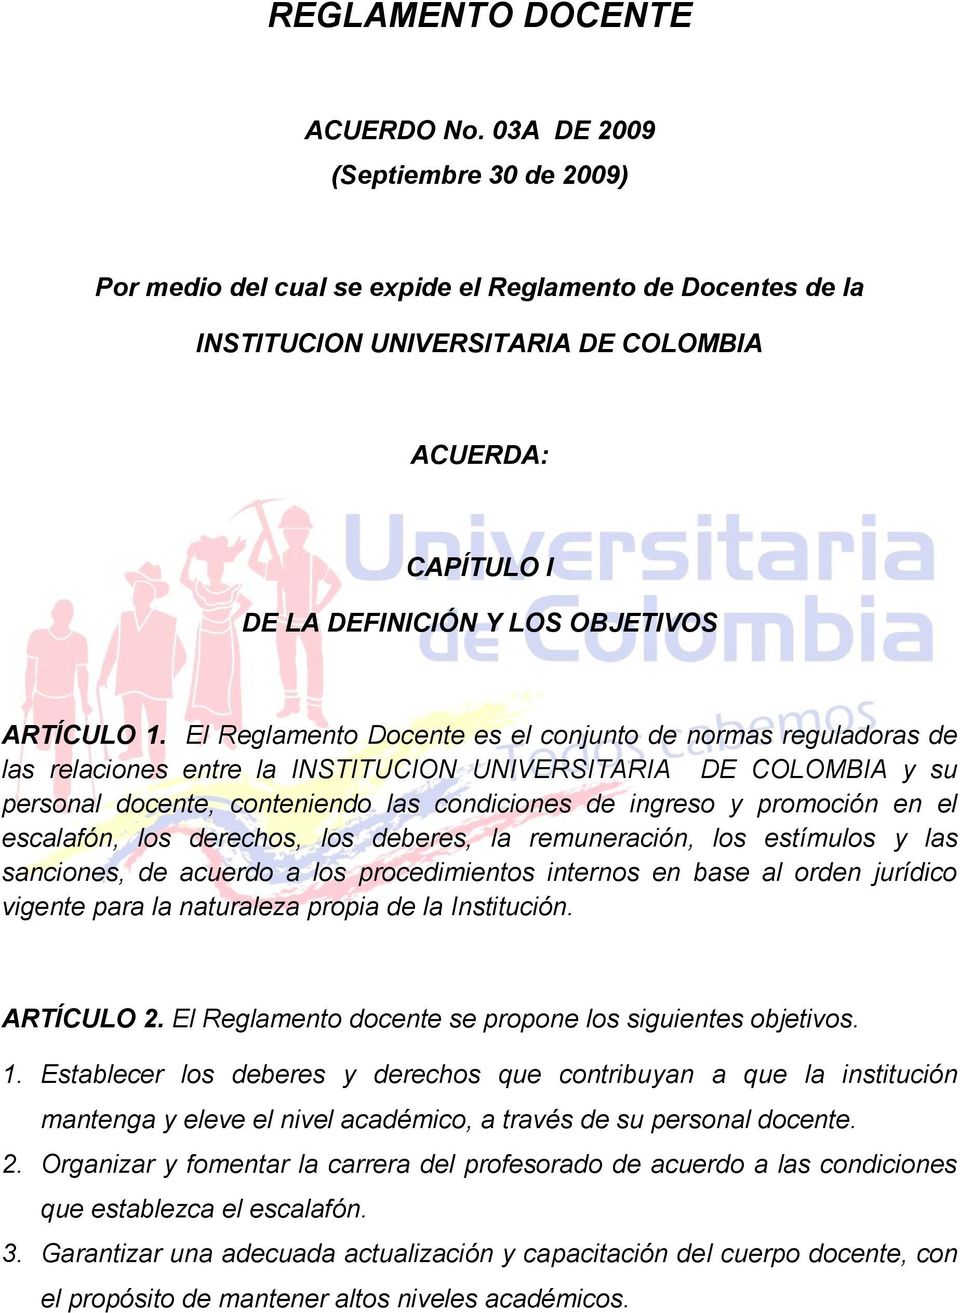 El Reglamento Docente es el conjunto de normas reguladoras de las relaciones entre la INSTITUCION UNIVERSITARIA DE COLOMBIA y su personal docente, conteniendo las condiciones de ingreso y promoción